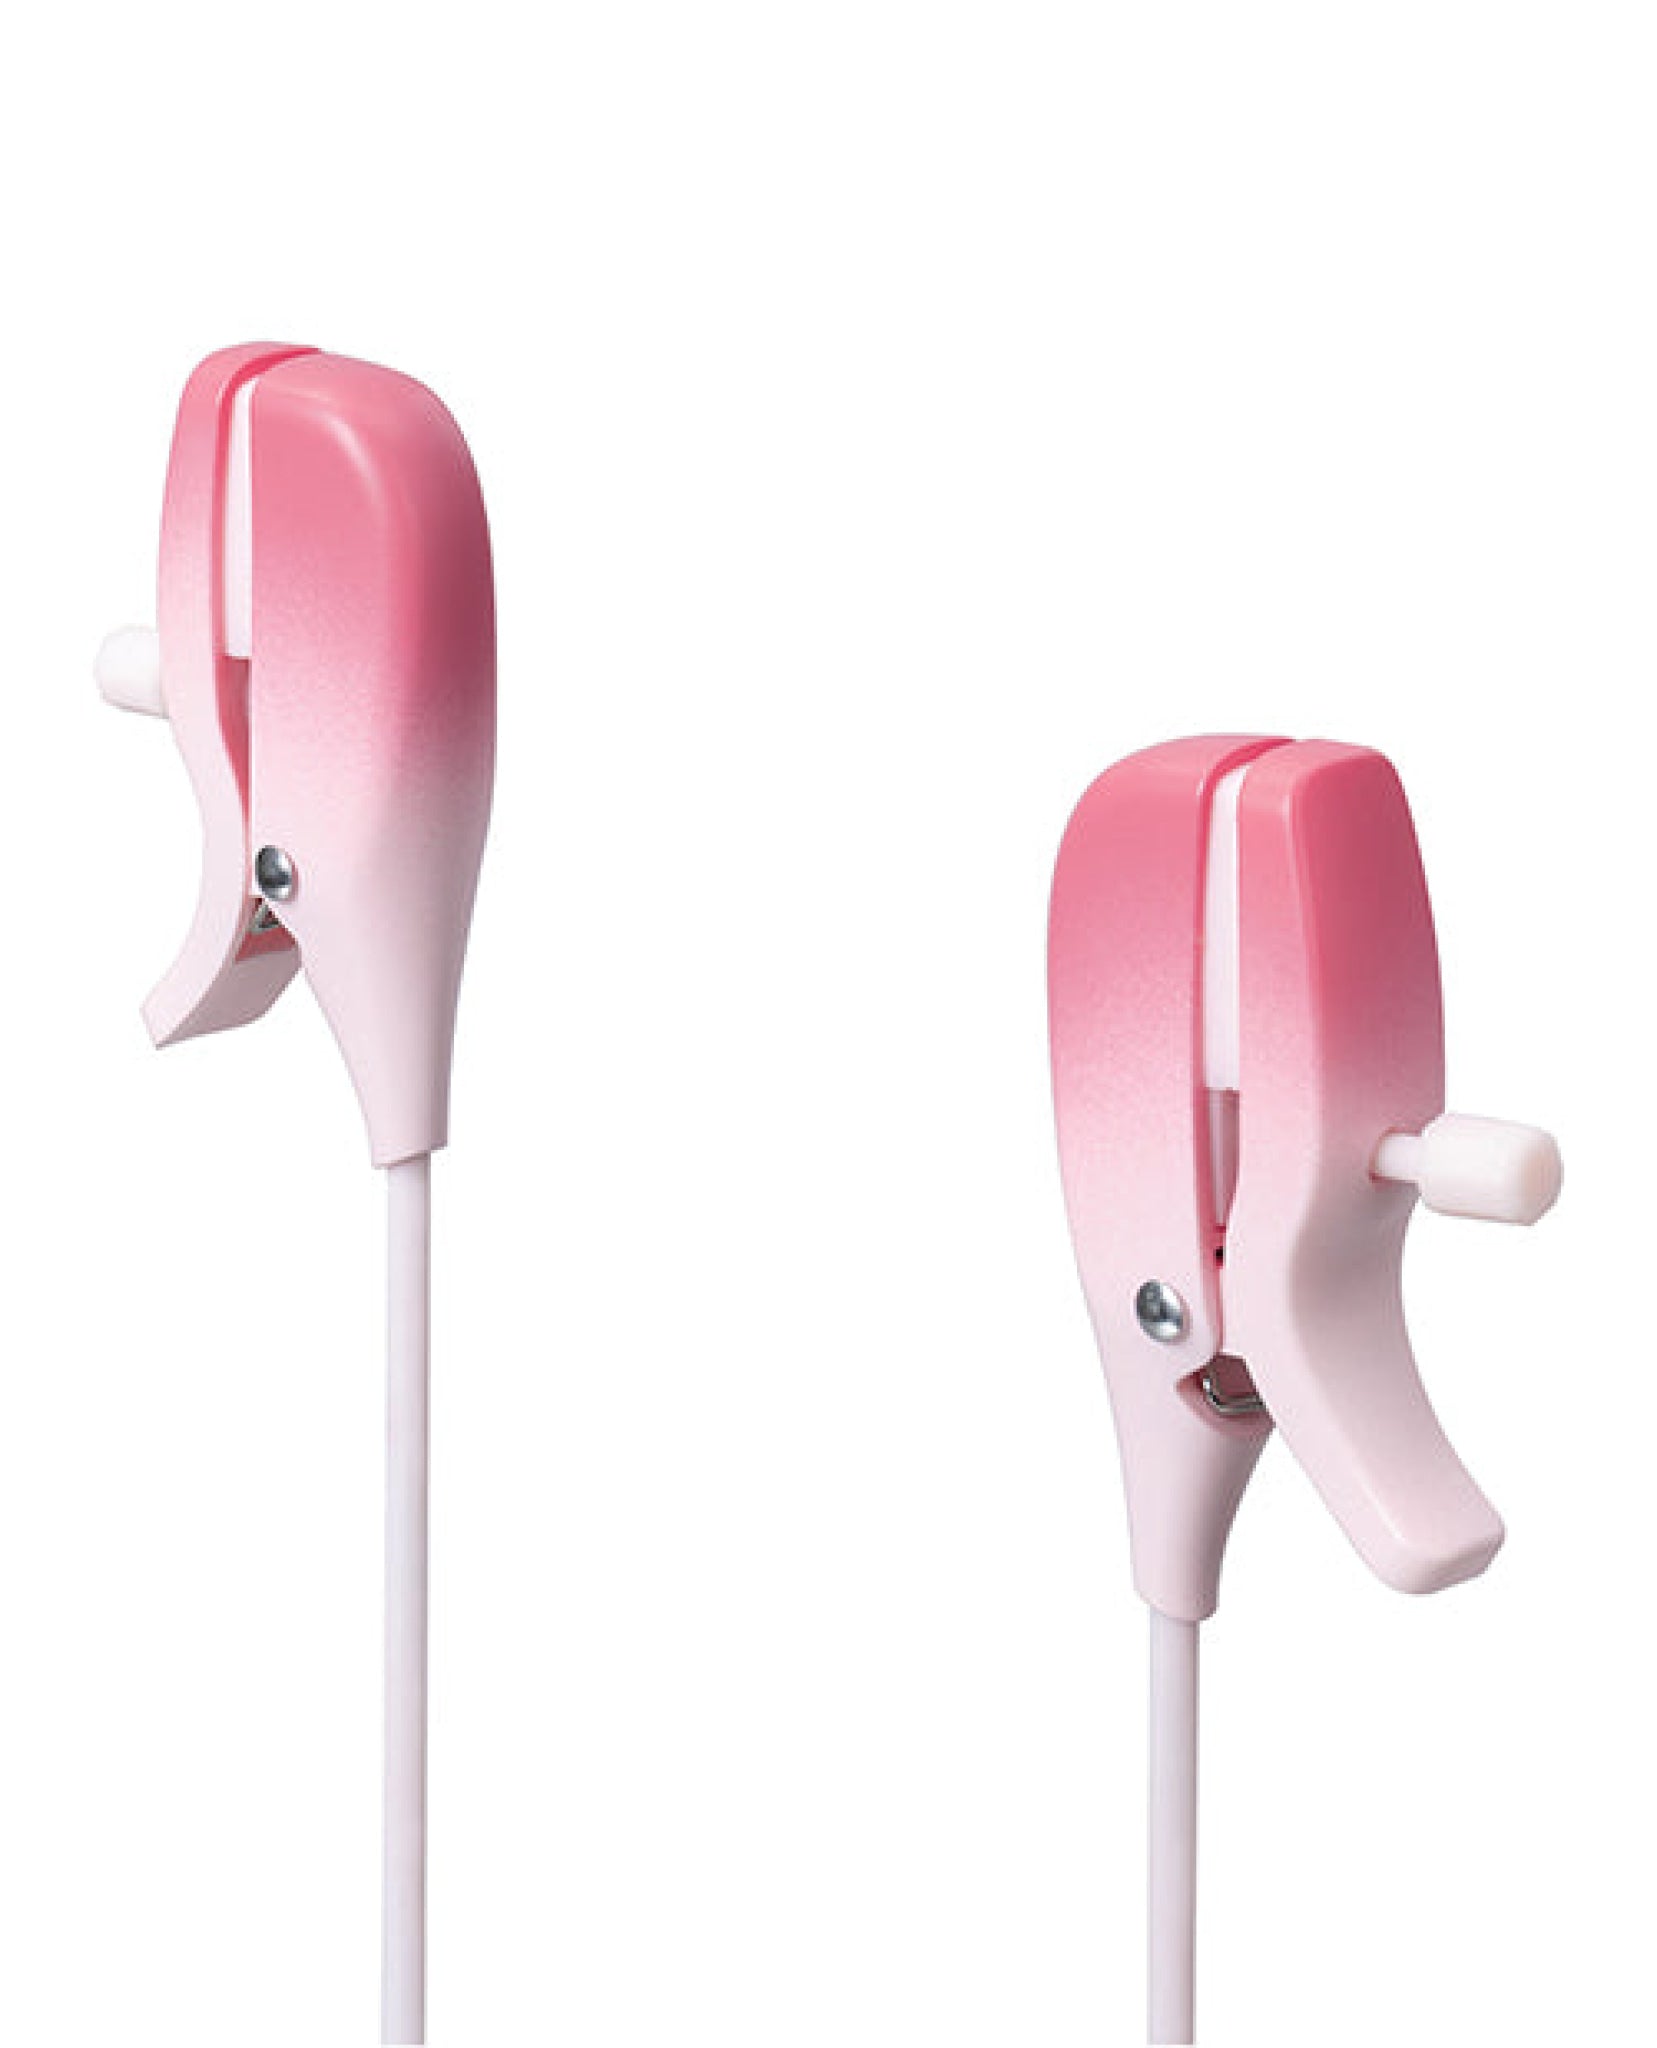 Lovense Gemini Vibrating Nipple Clamps - Pink Lovense®